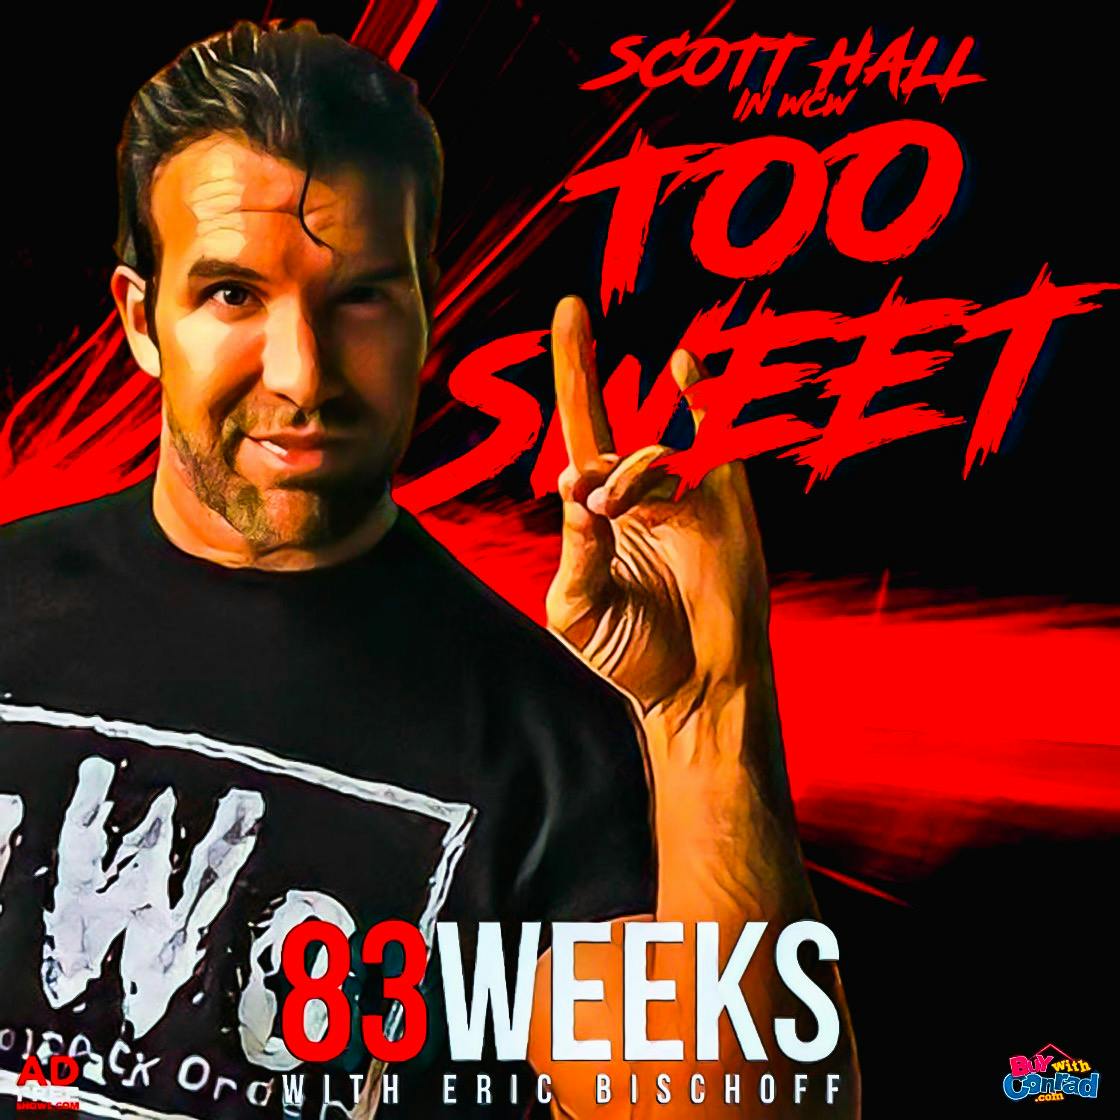 83 Weeks 240: Scott Hall: Too Sweet!